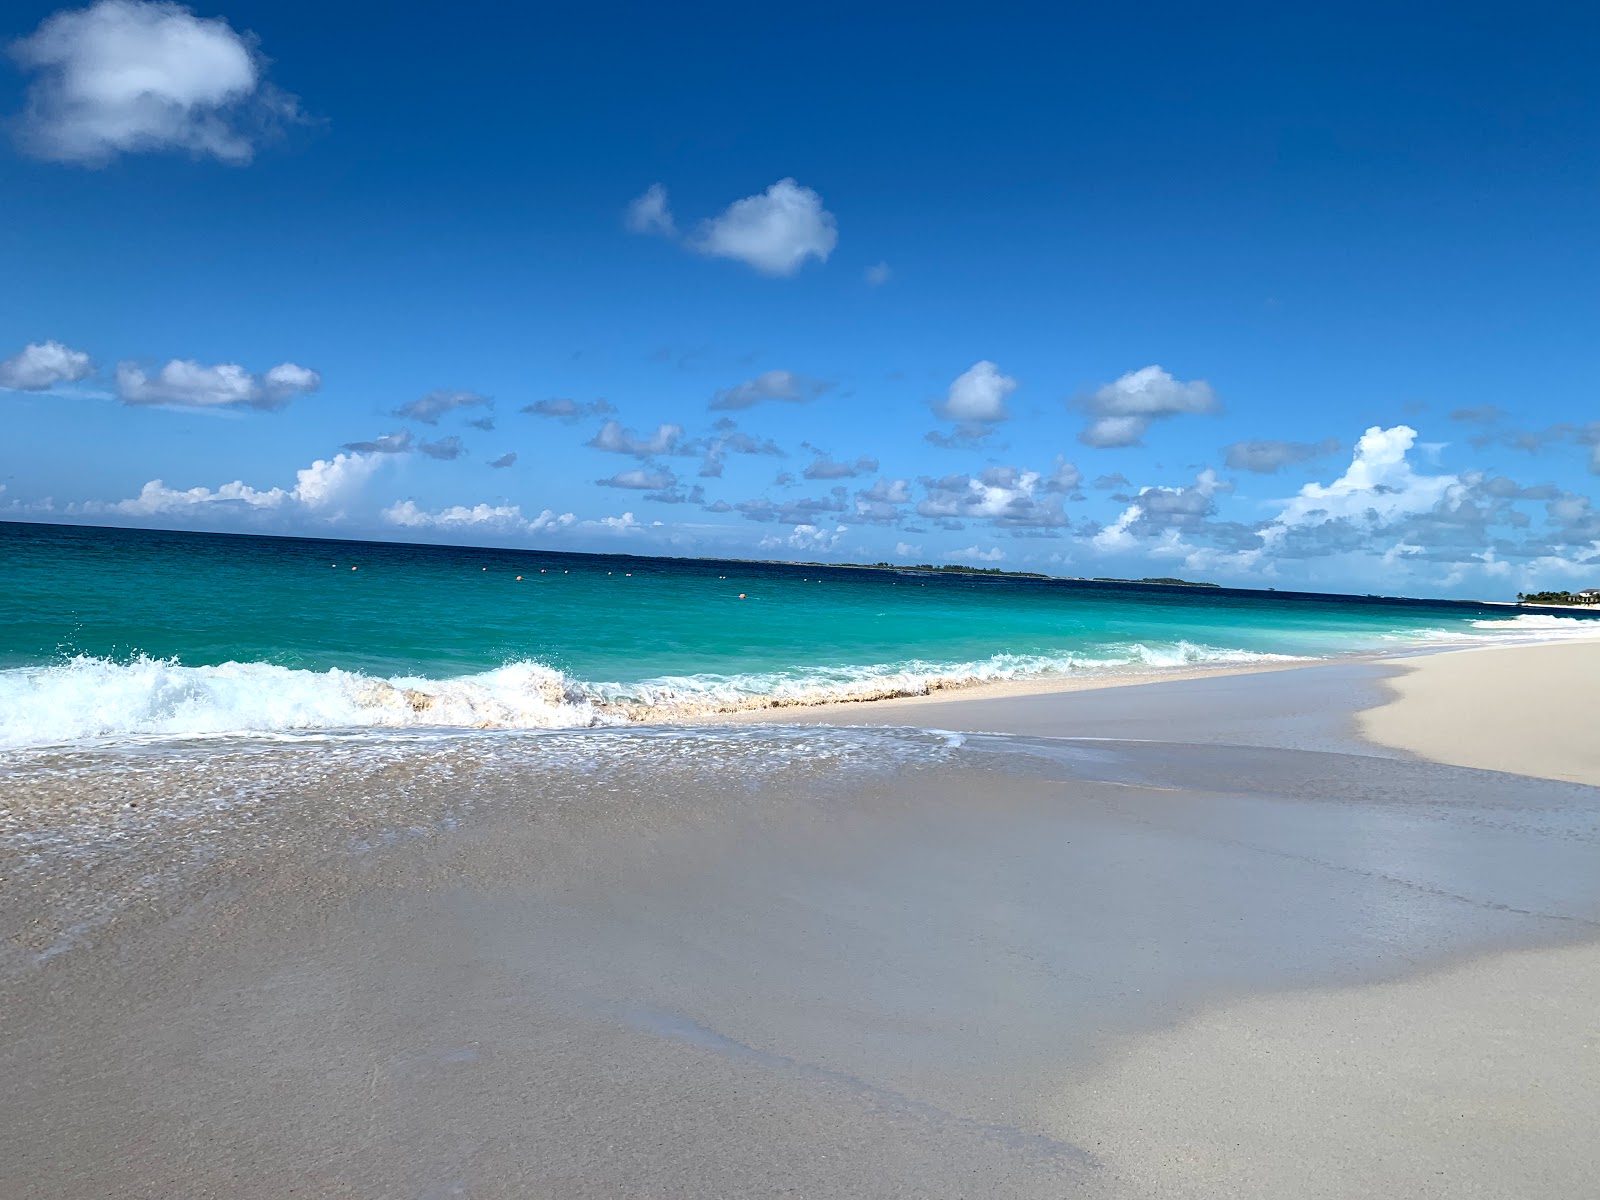 Zdjęcie Paradise beach - popularne miejsce wśród znawców relaksu